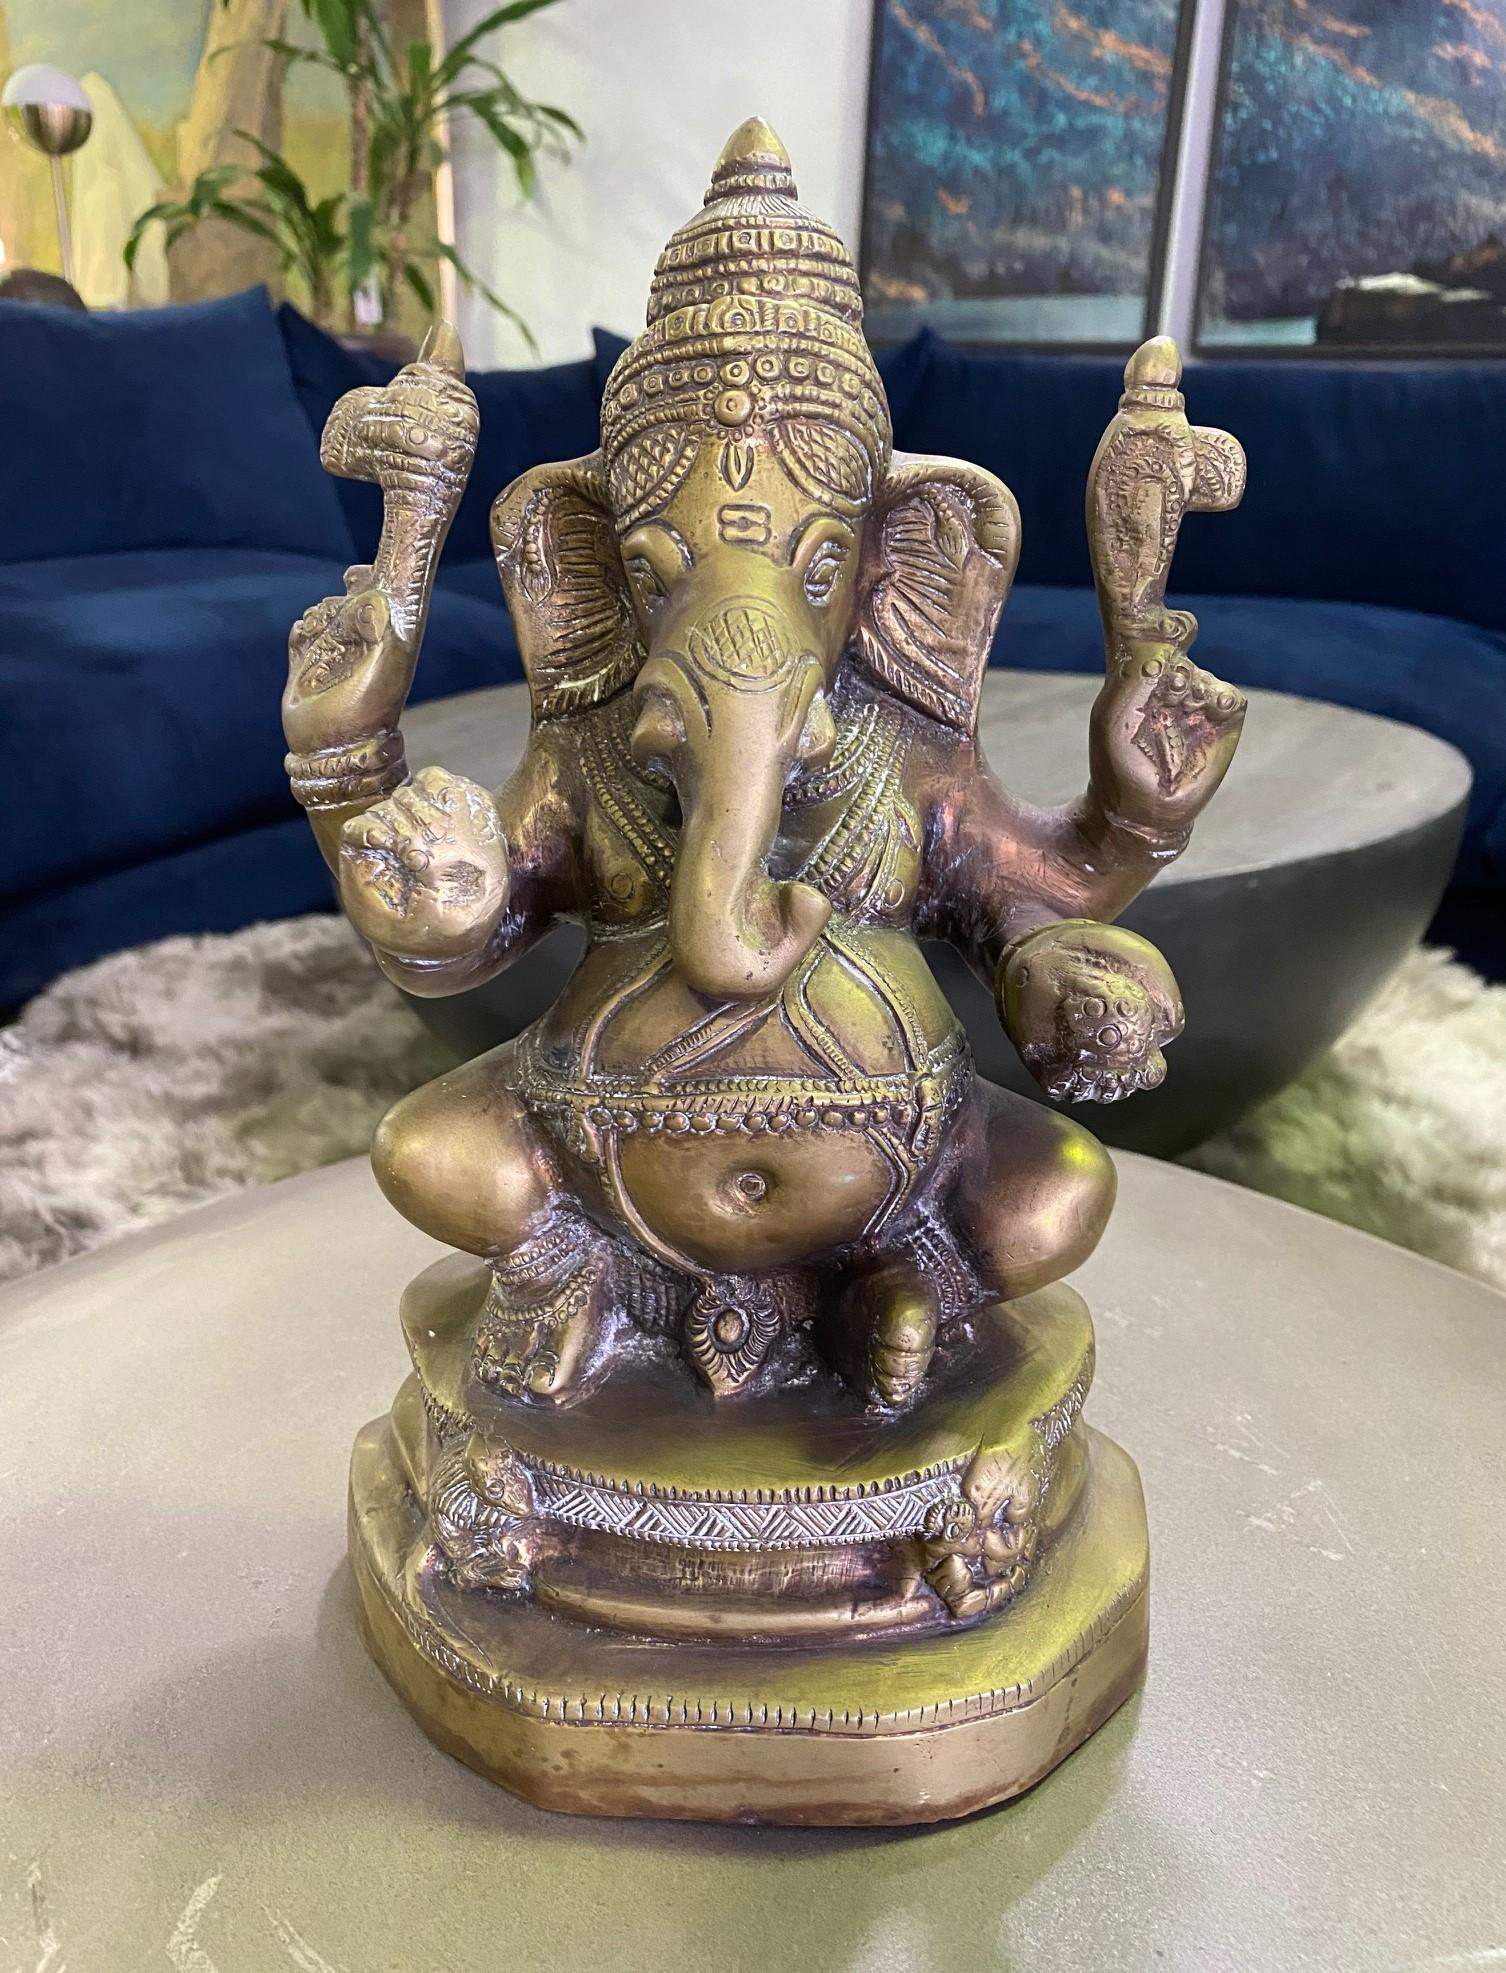 Une sculpture en laiton merveilleusement détaillée du dieu indien Ganesh ou Ganesha avec sa grande tête d'éléphant facilement reconnaissable. Ganesh est l'une des divinités les plus connues et les plus vénérées du panthéon hindou. Il est largement